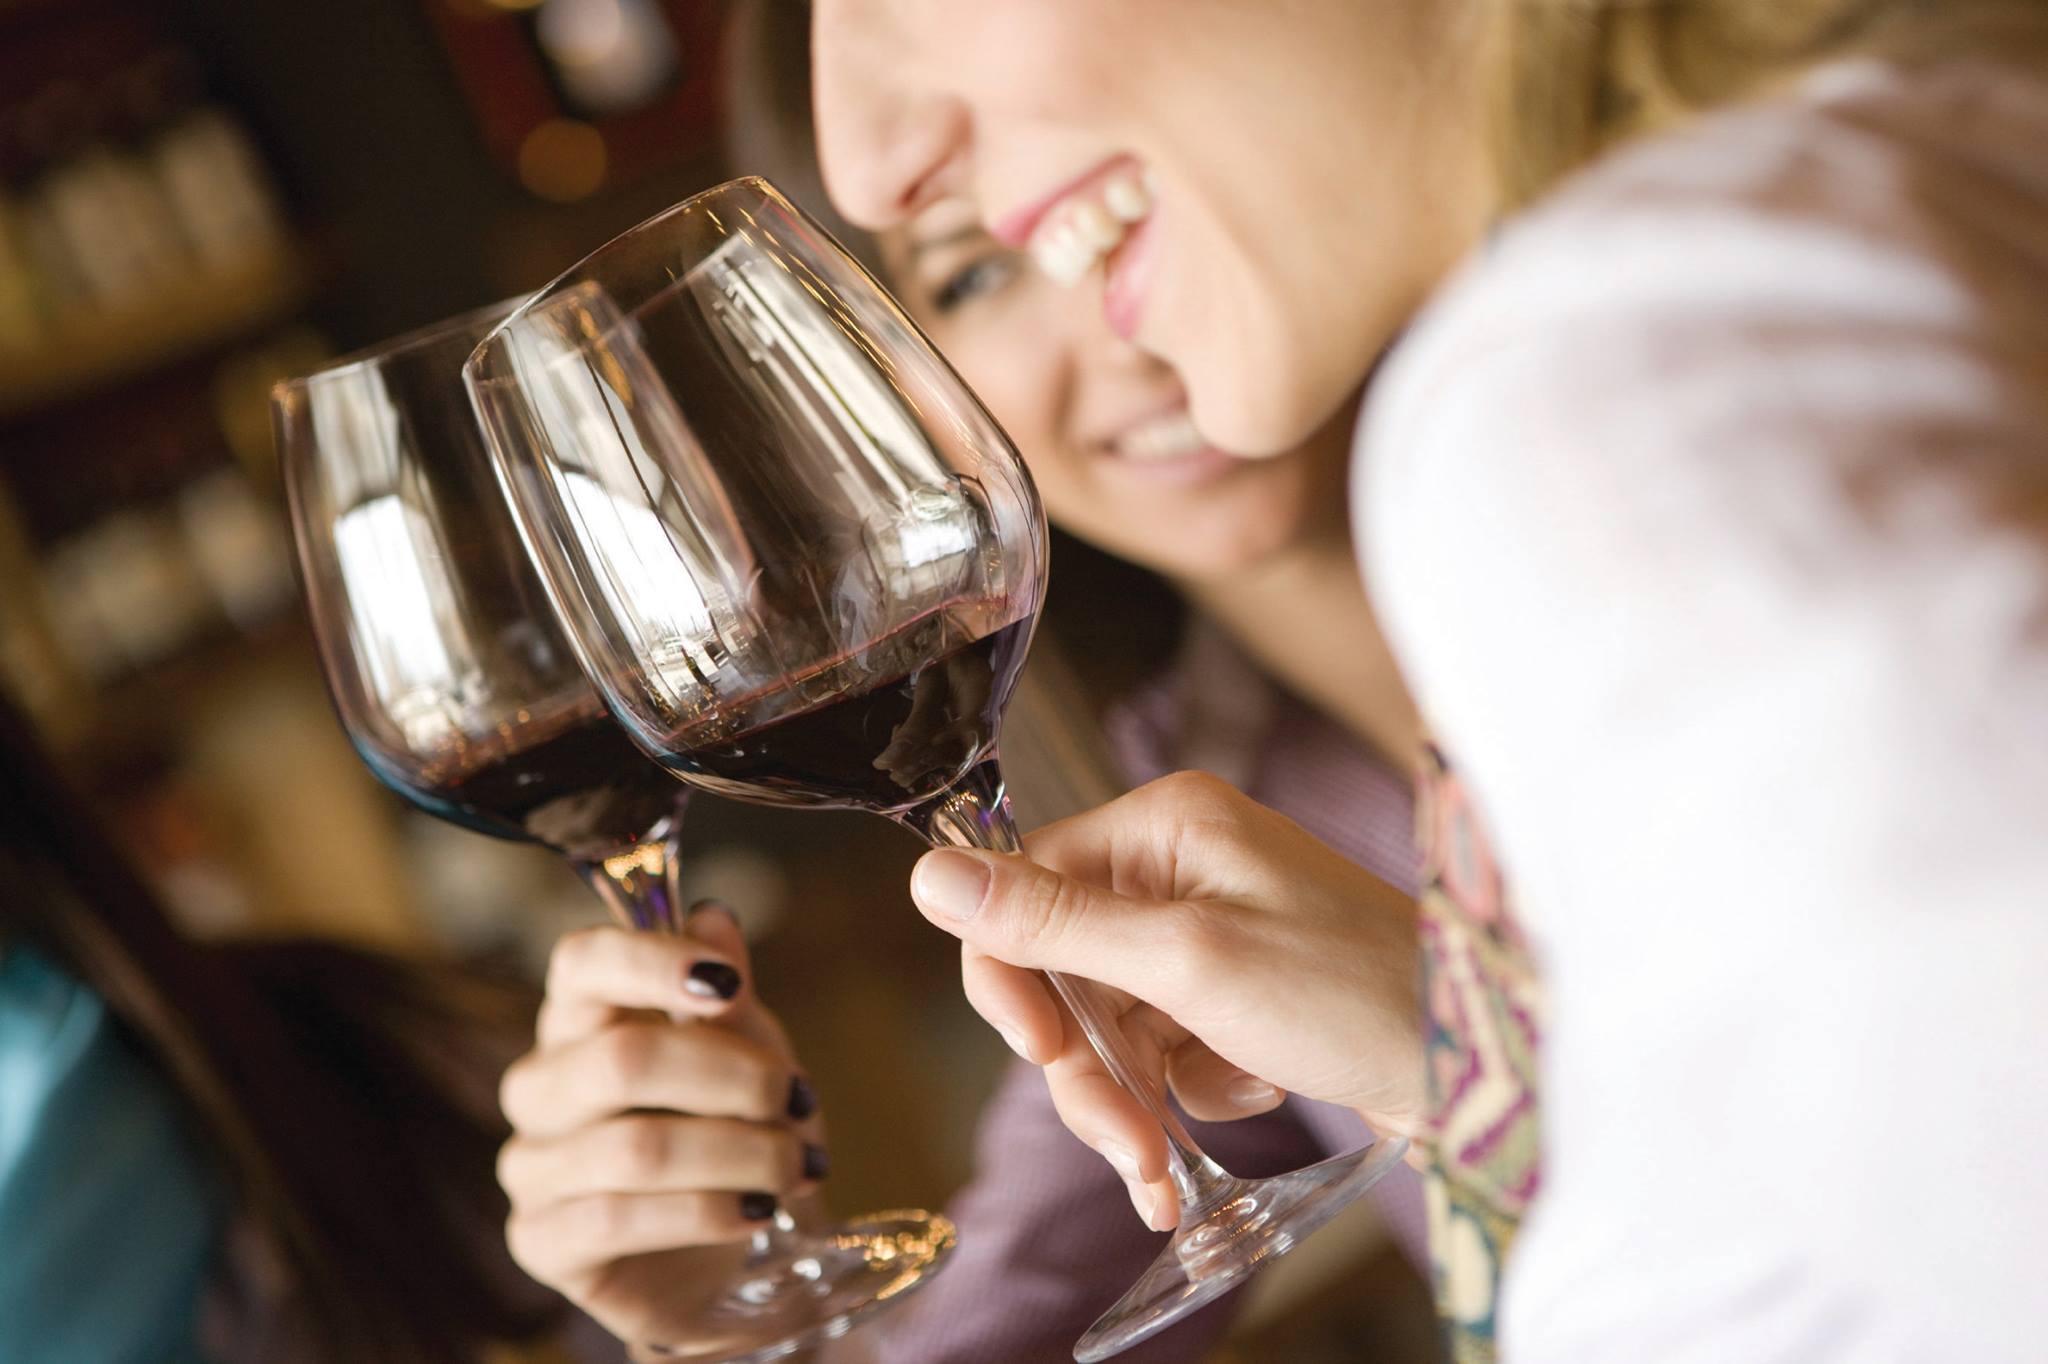 Wine 101: Wine Society – How to Enjoy Wine With Friends